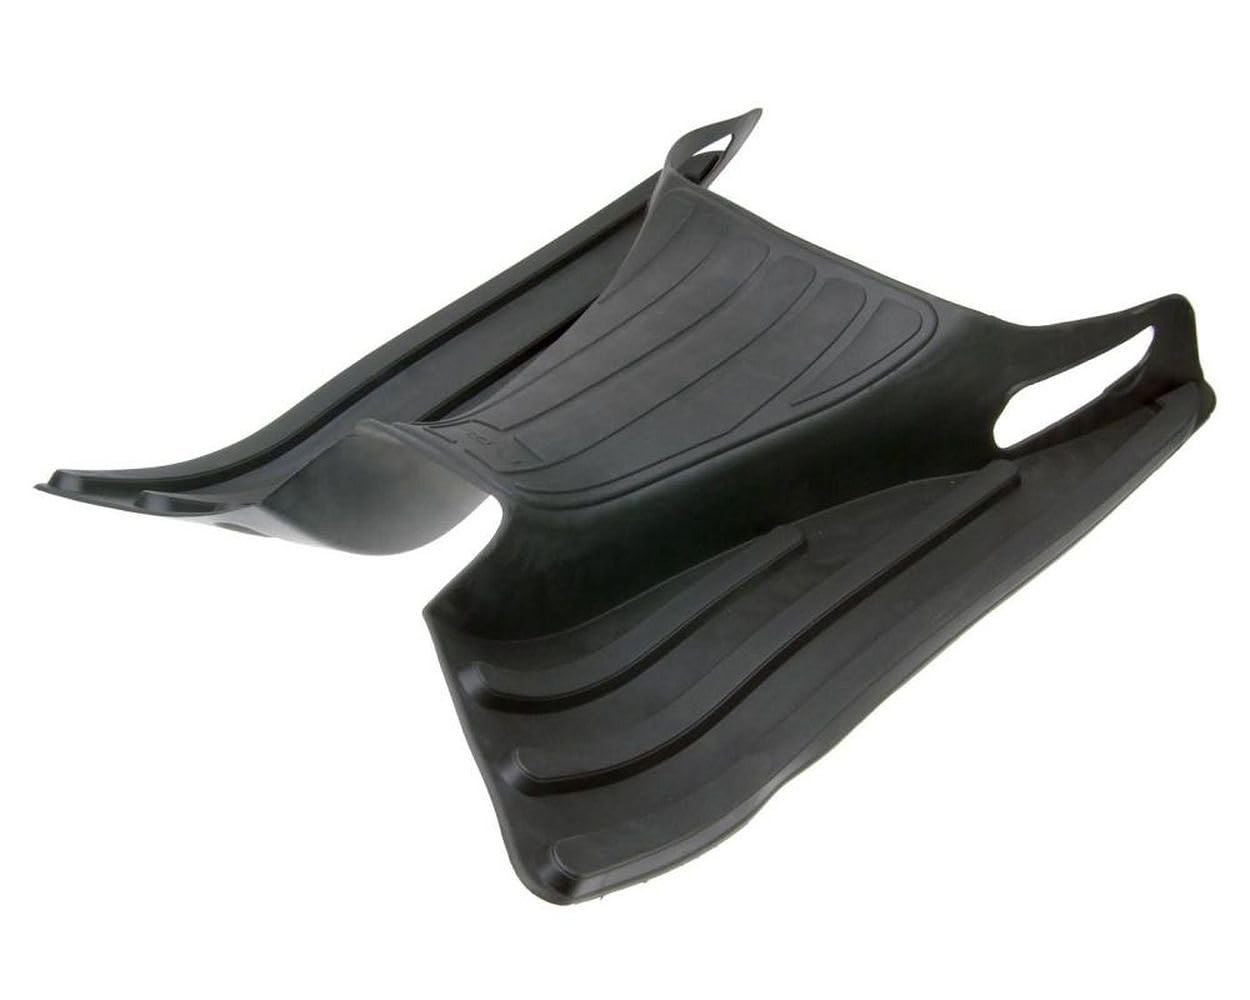 2EXTREME Original Fußmatte, Trittbret, schwarz, kompatibel für Piaggio, Vespa GT, GTL, GTS, GTV 125, 200, 250, 300 von 2EXTREME